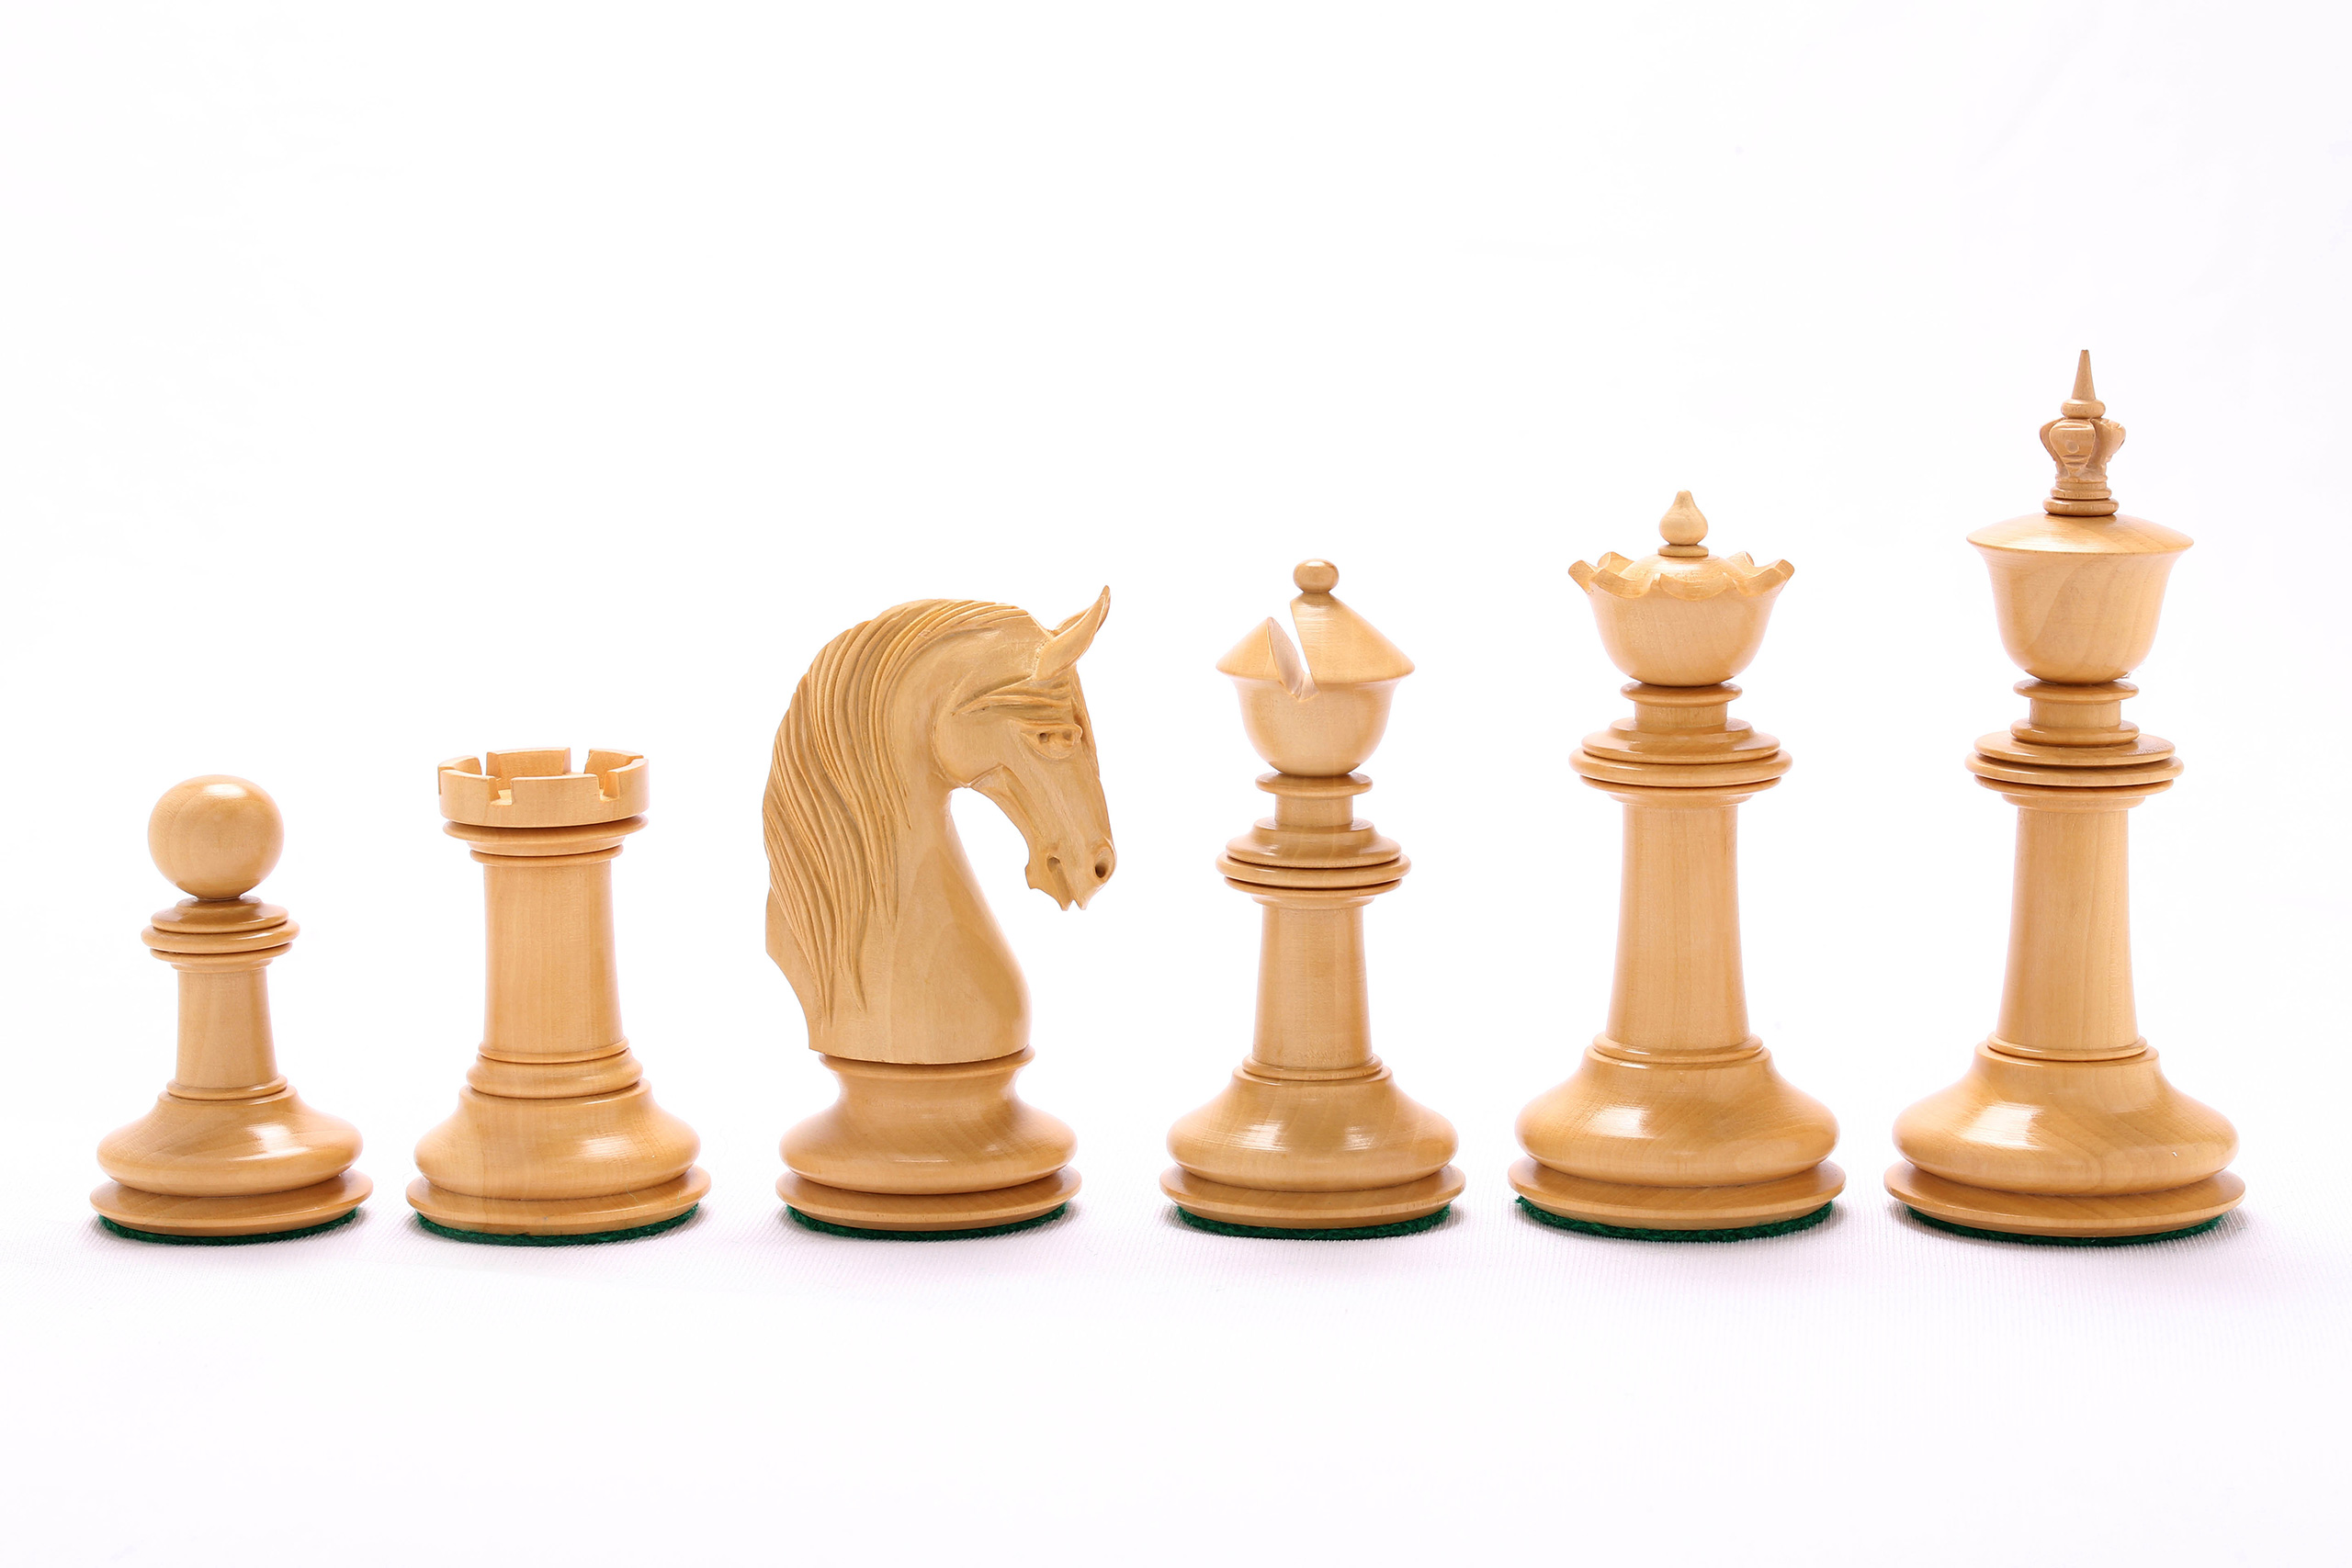 Ebony wood chess pieces lathe